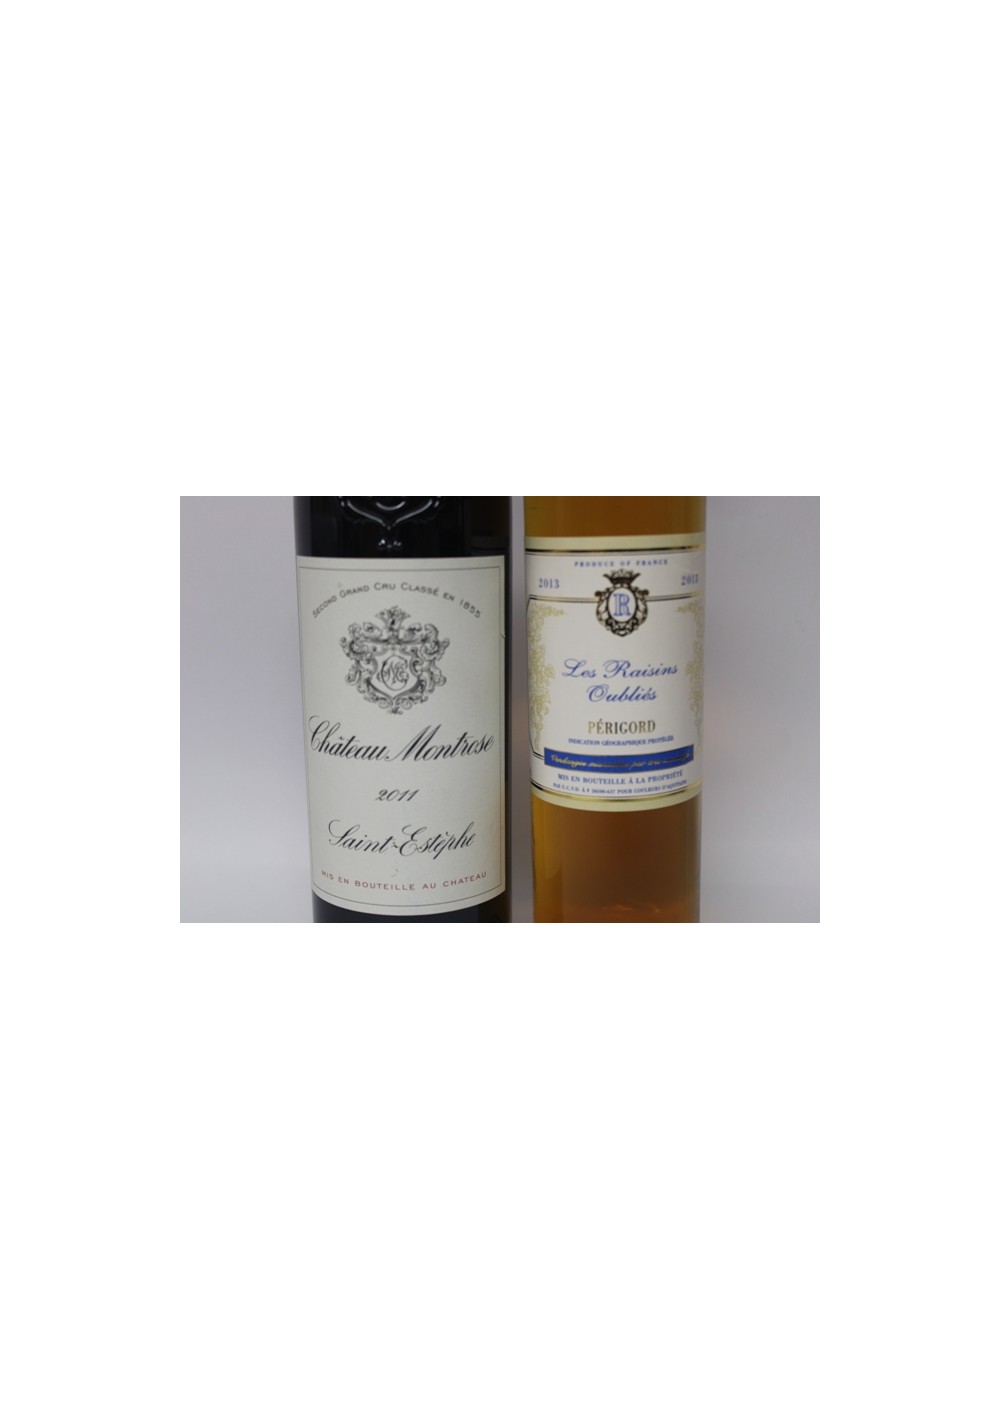 Gift box, 2 bottles - 1 Château Montrose 2011 - 1 Raisins Oubliés 2013